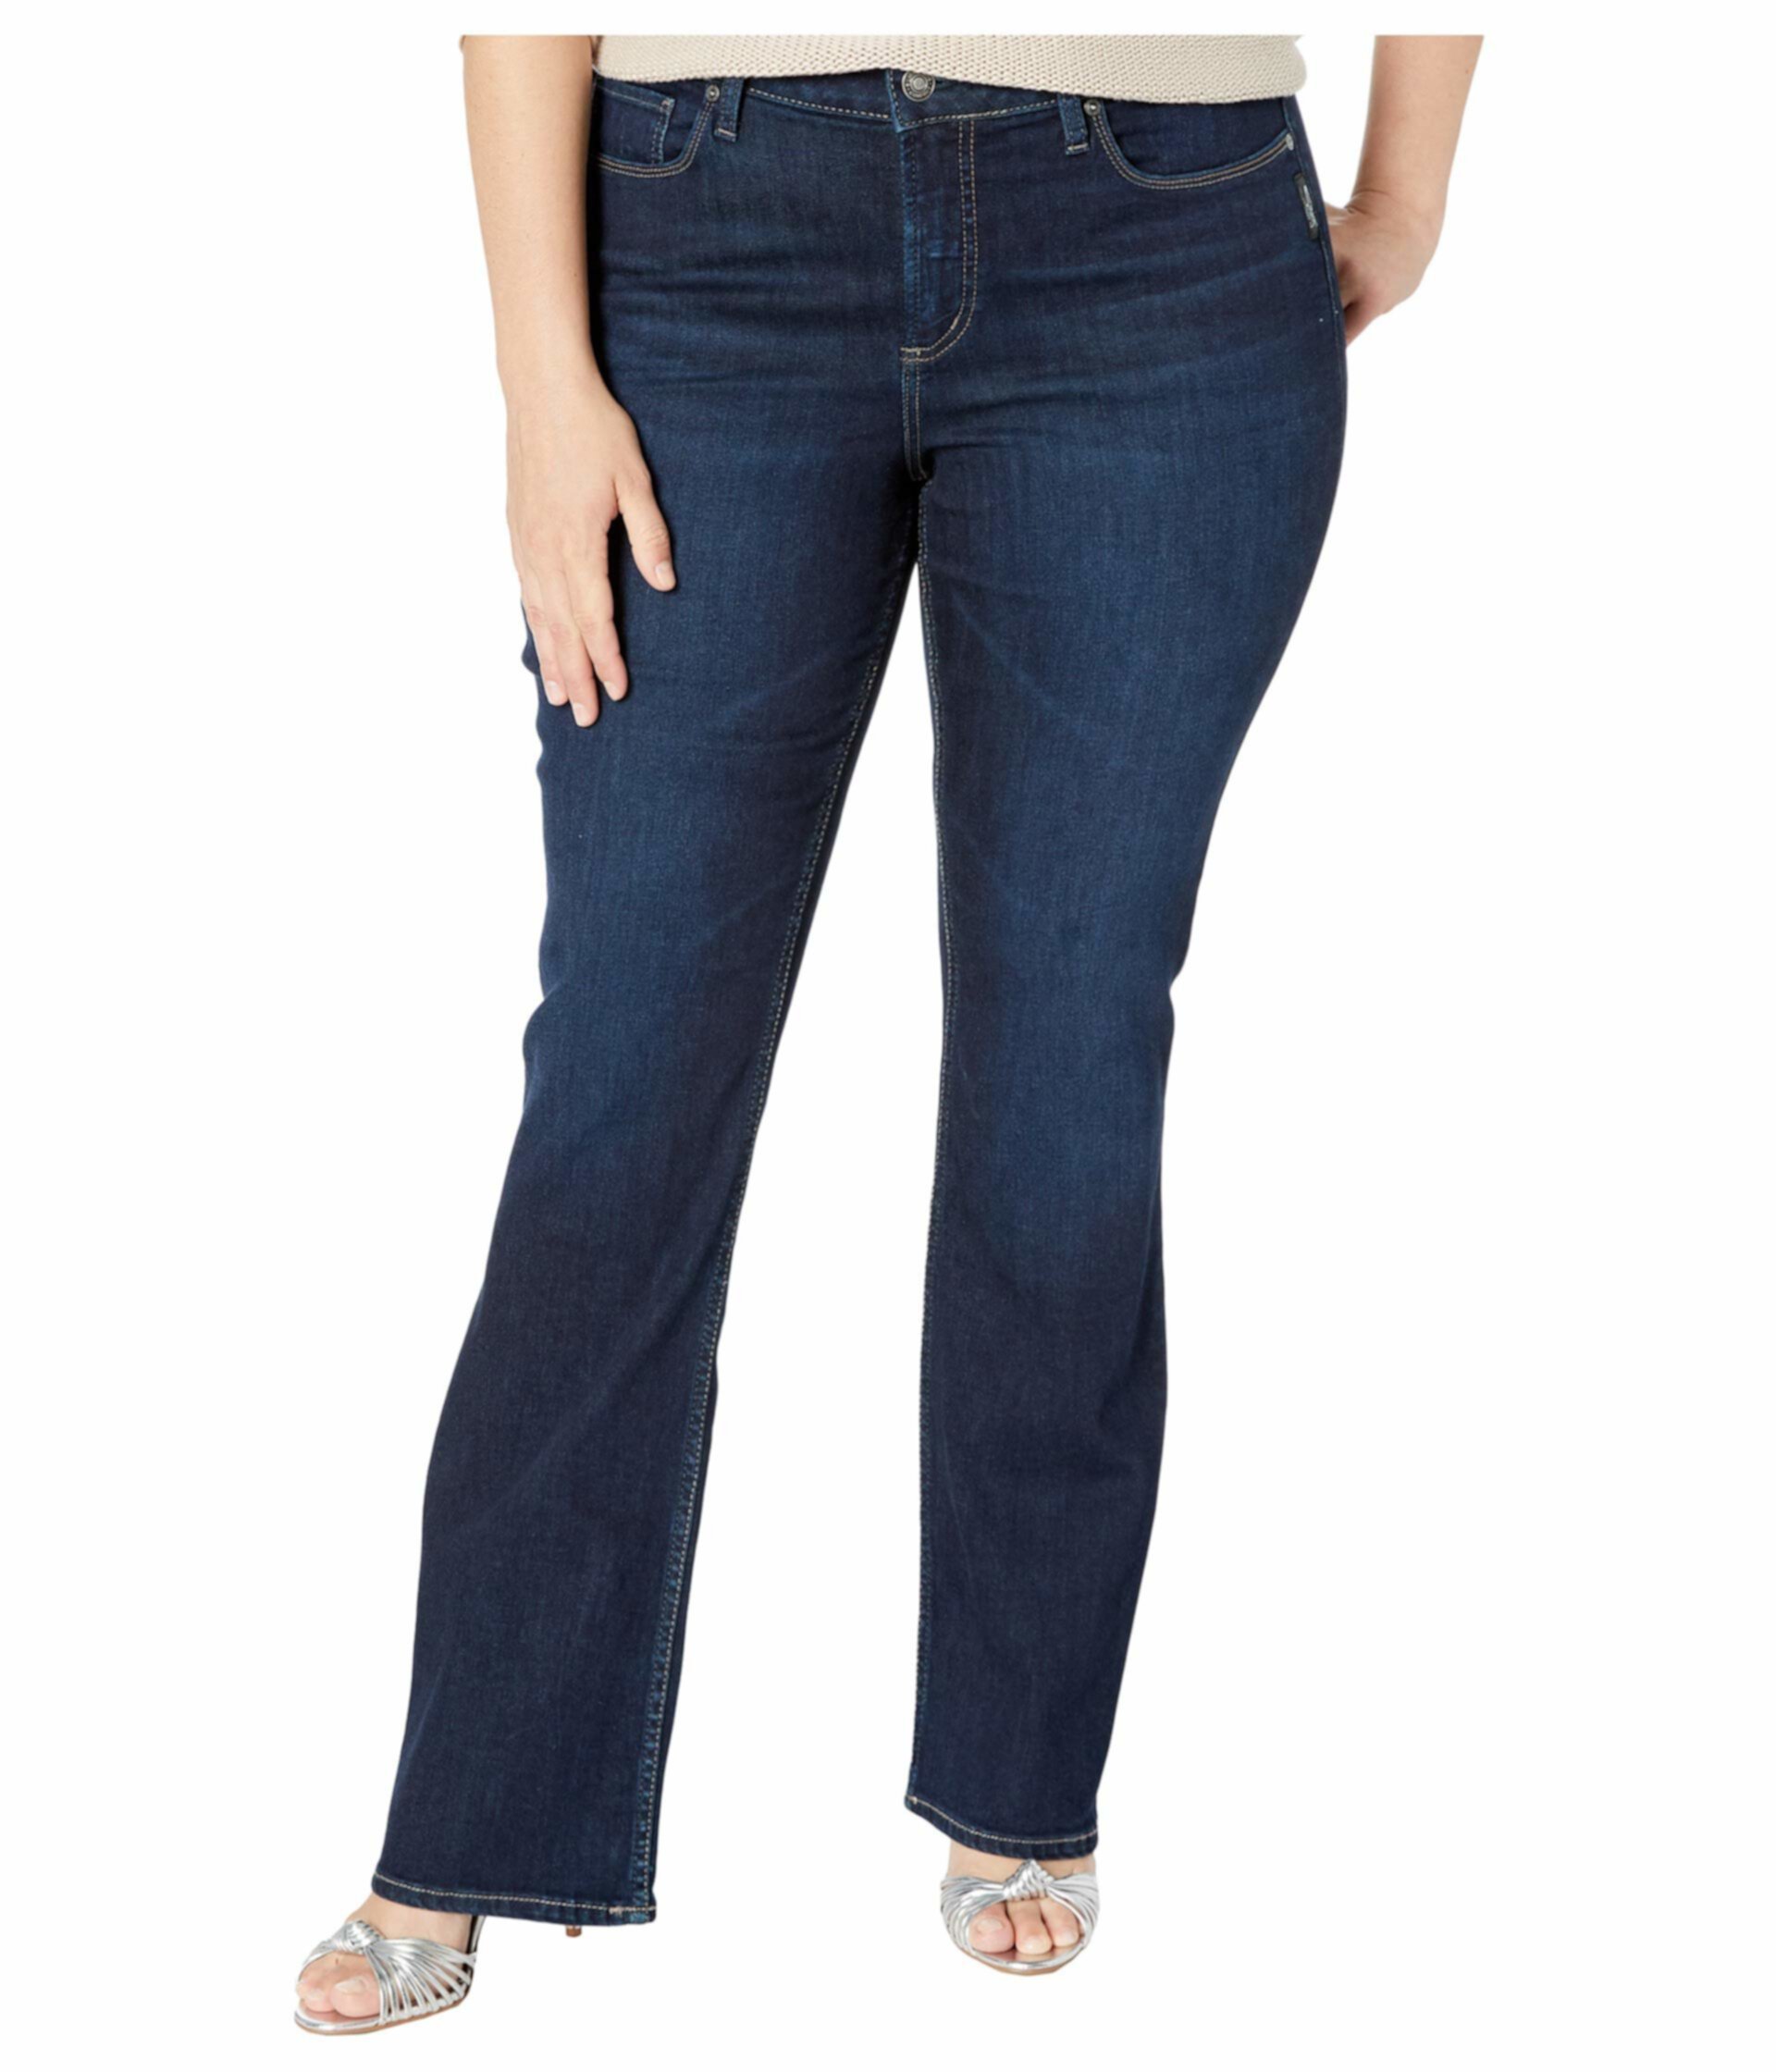 Узкие полусапожки Elyse среднего размера в цвете Индиго W03601SDK470 Silver Jeans Co.